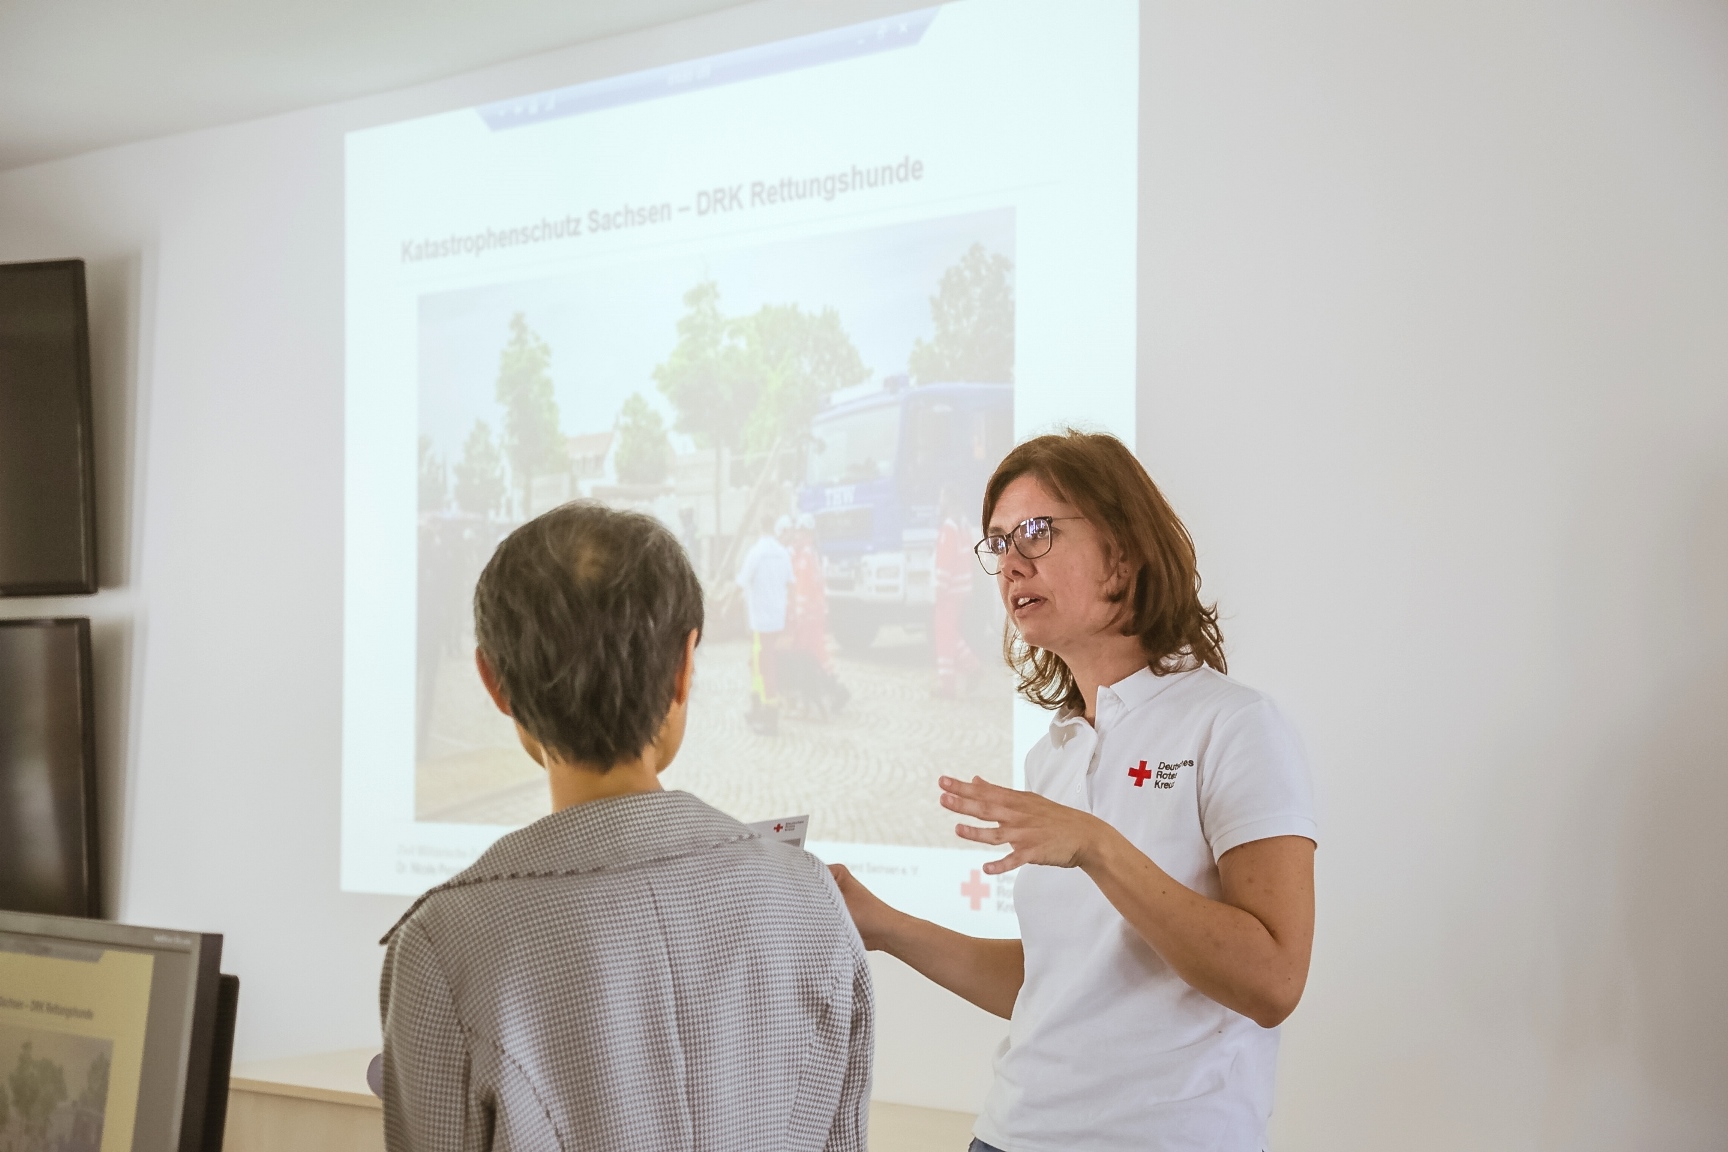 Eine DRK Mitarbeiterin präsentiert die Arbeit des DRK mit einer Powerpoint-Präsentation.